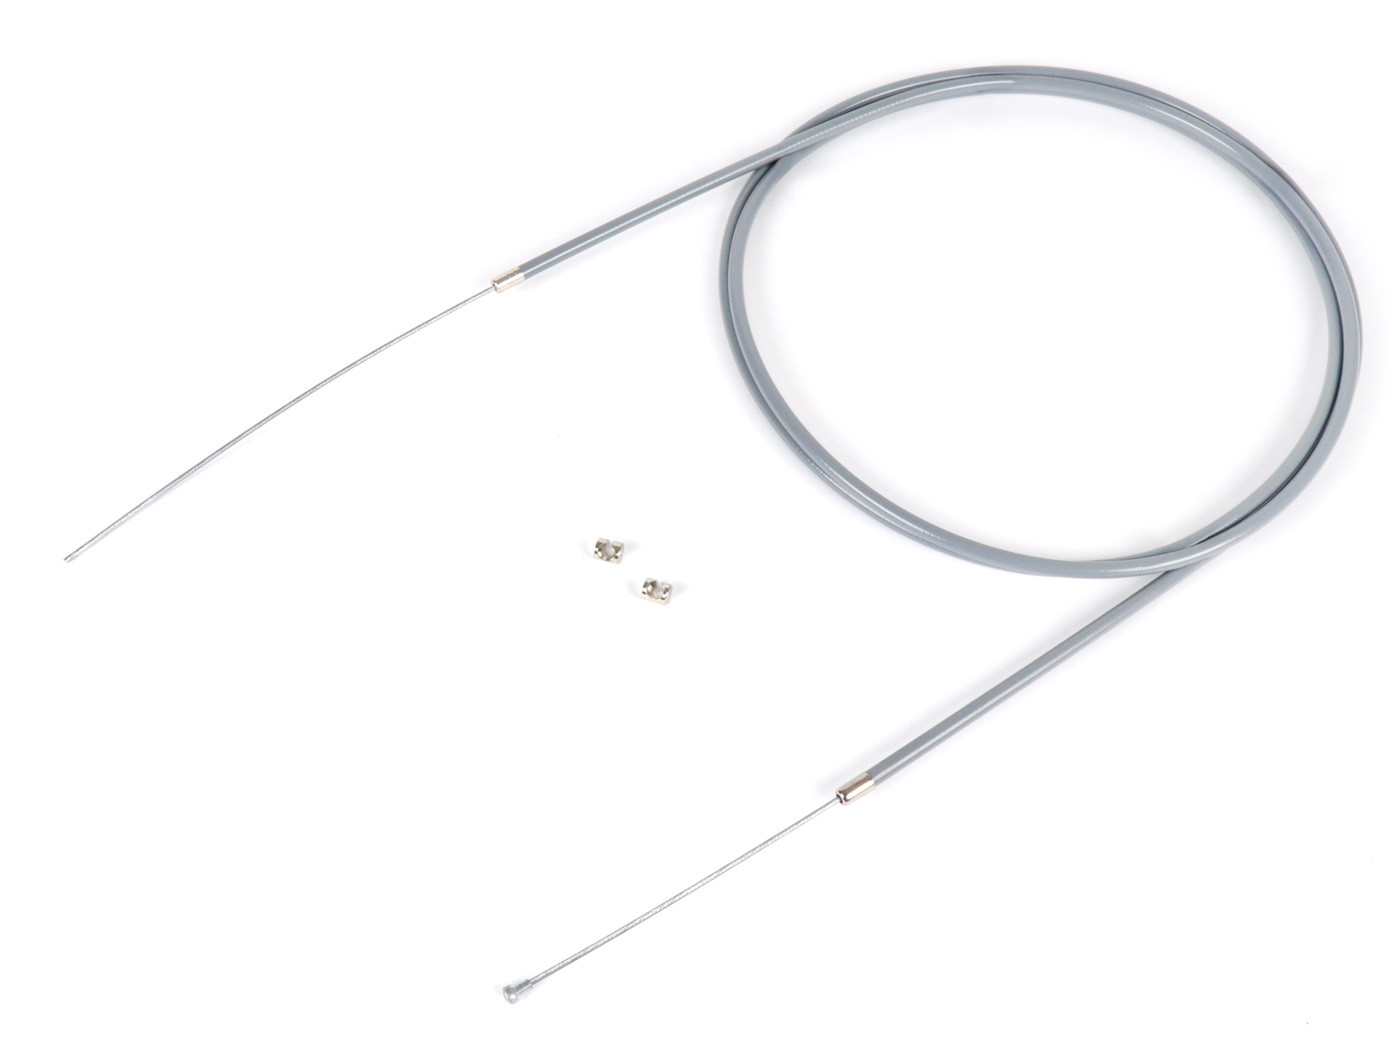 Univerzális kábel BGM Original Ř=1.9mm x 2500mm, köpeny= 2200mm, bimbó Ř=8.0mm x 8mm, belső köpeny PE, szürke, kuplungkábelként, első fékkábelként használatos.